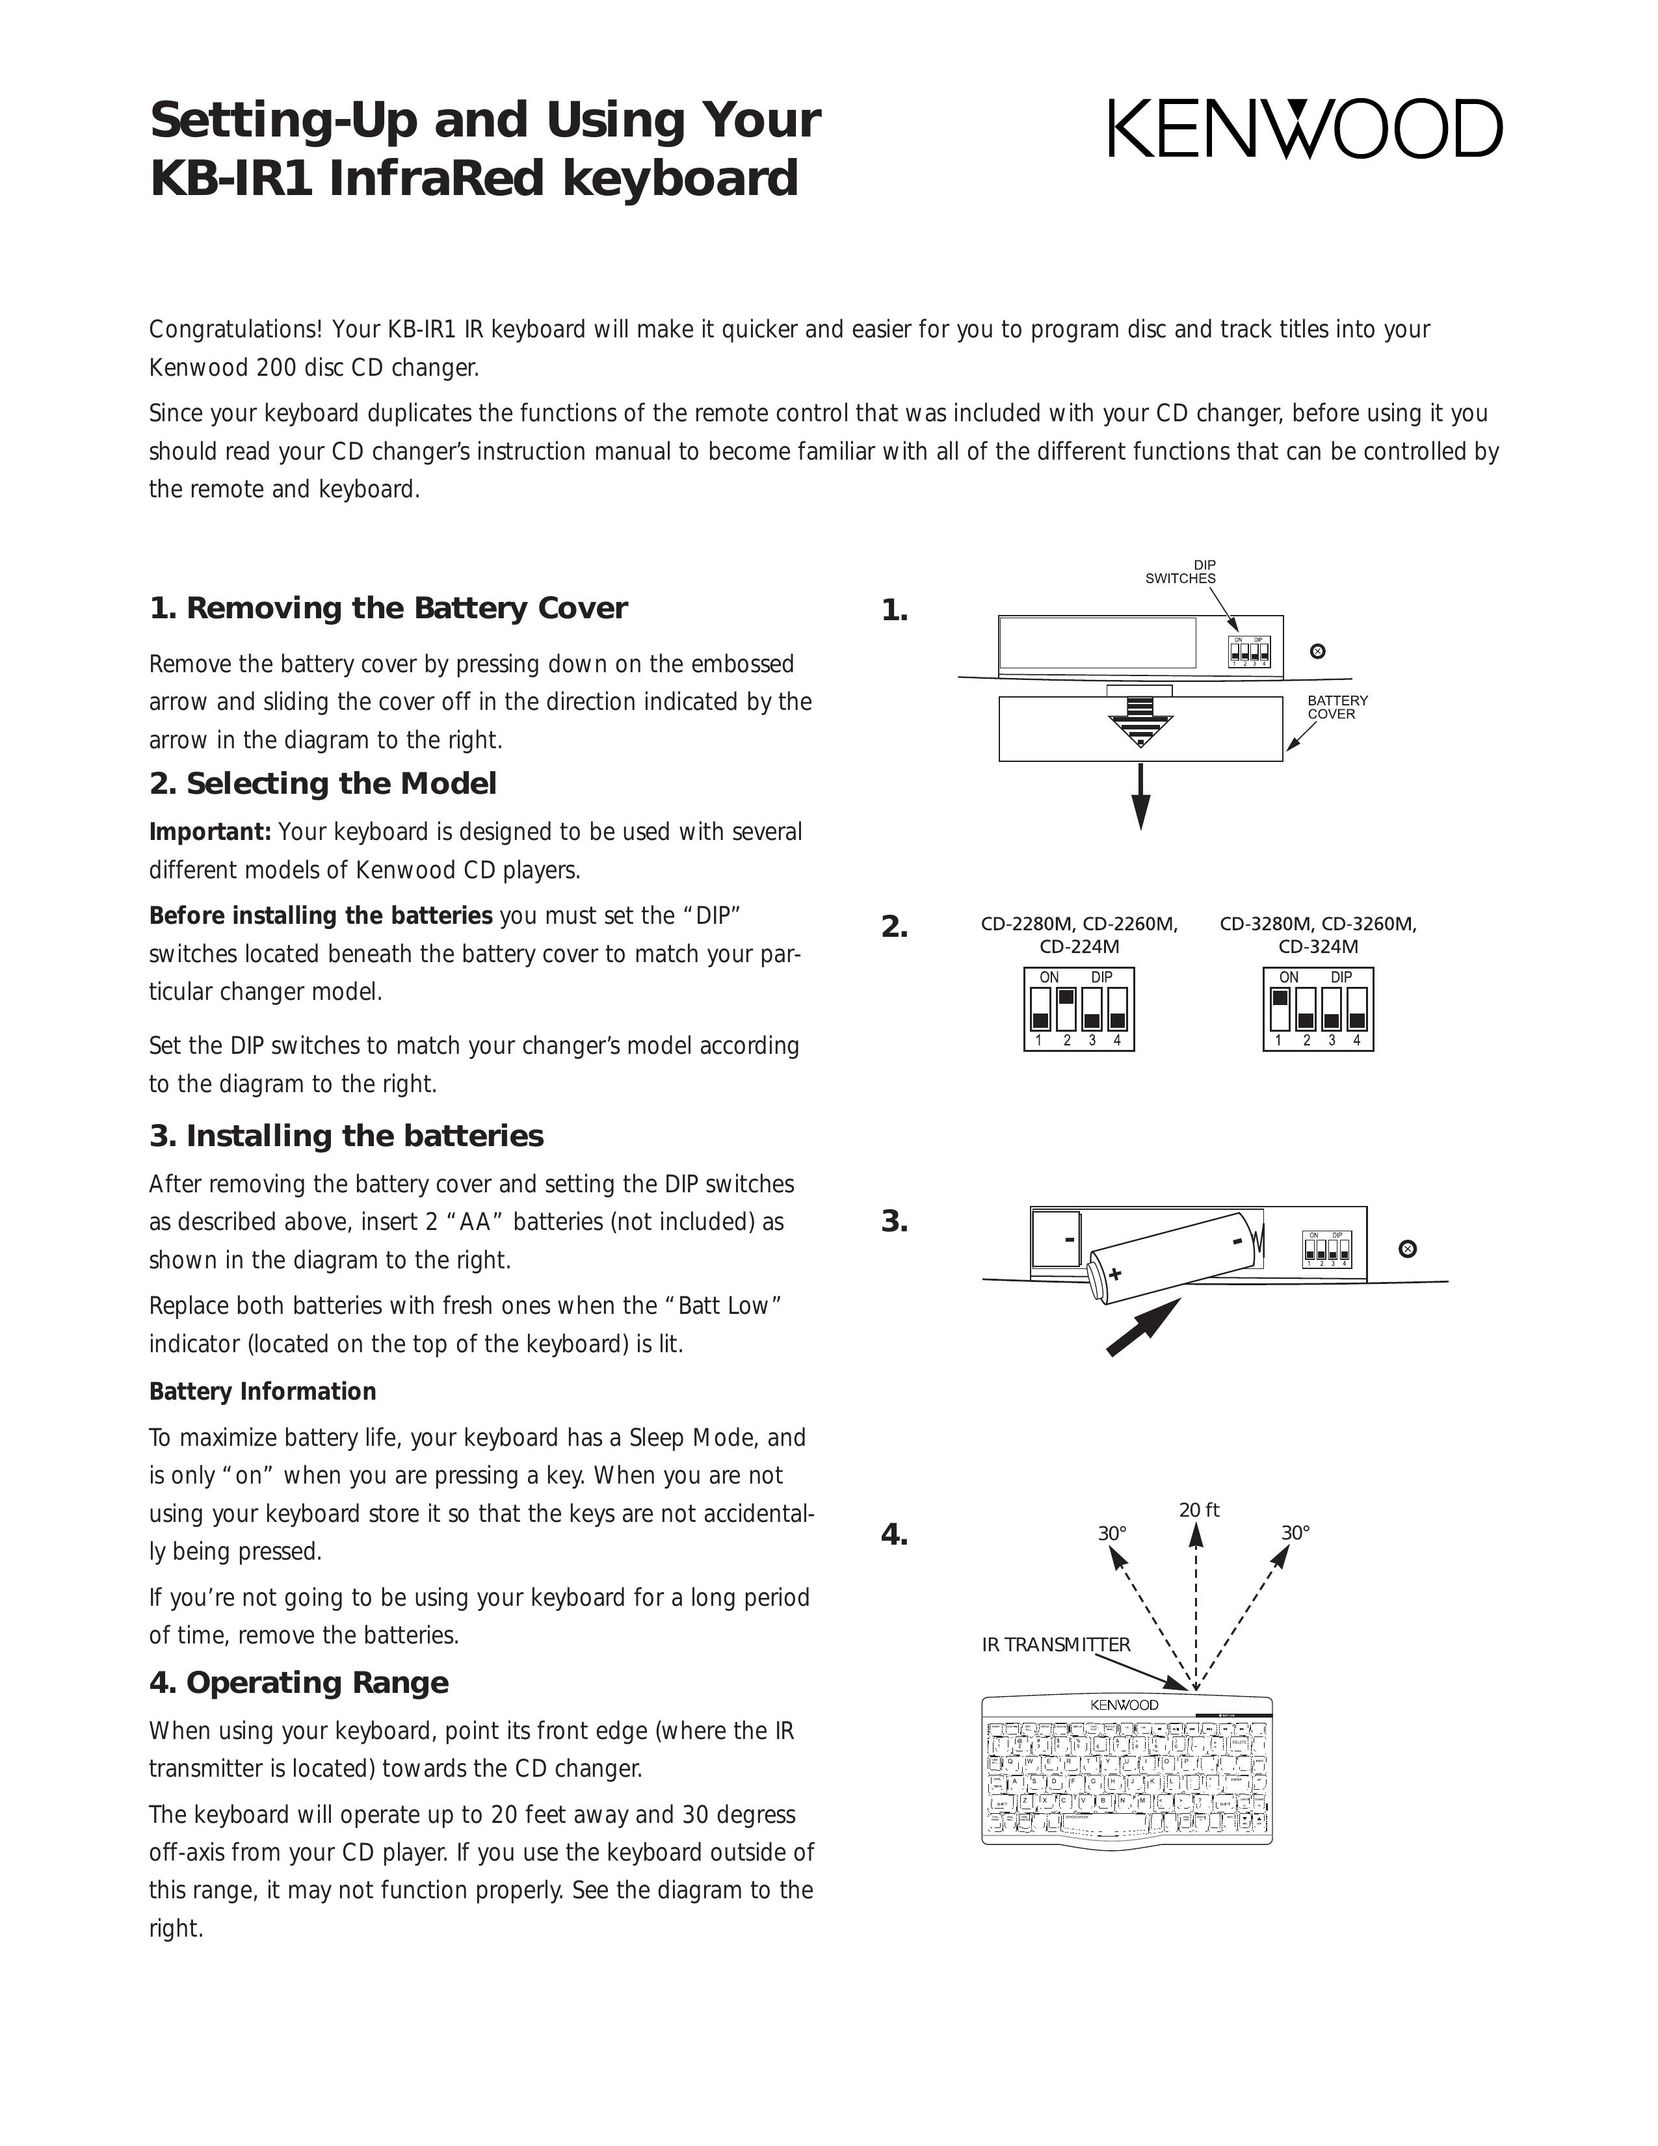 Kenwood KB-IR1 Computer Keyboard User Manual